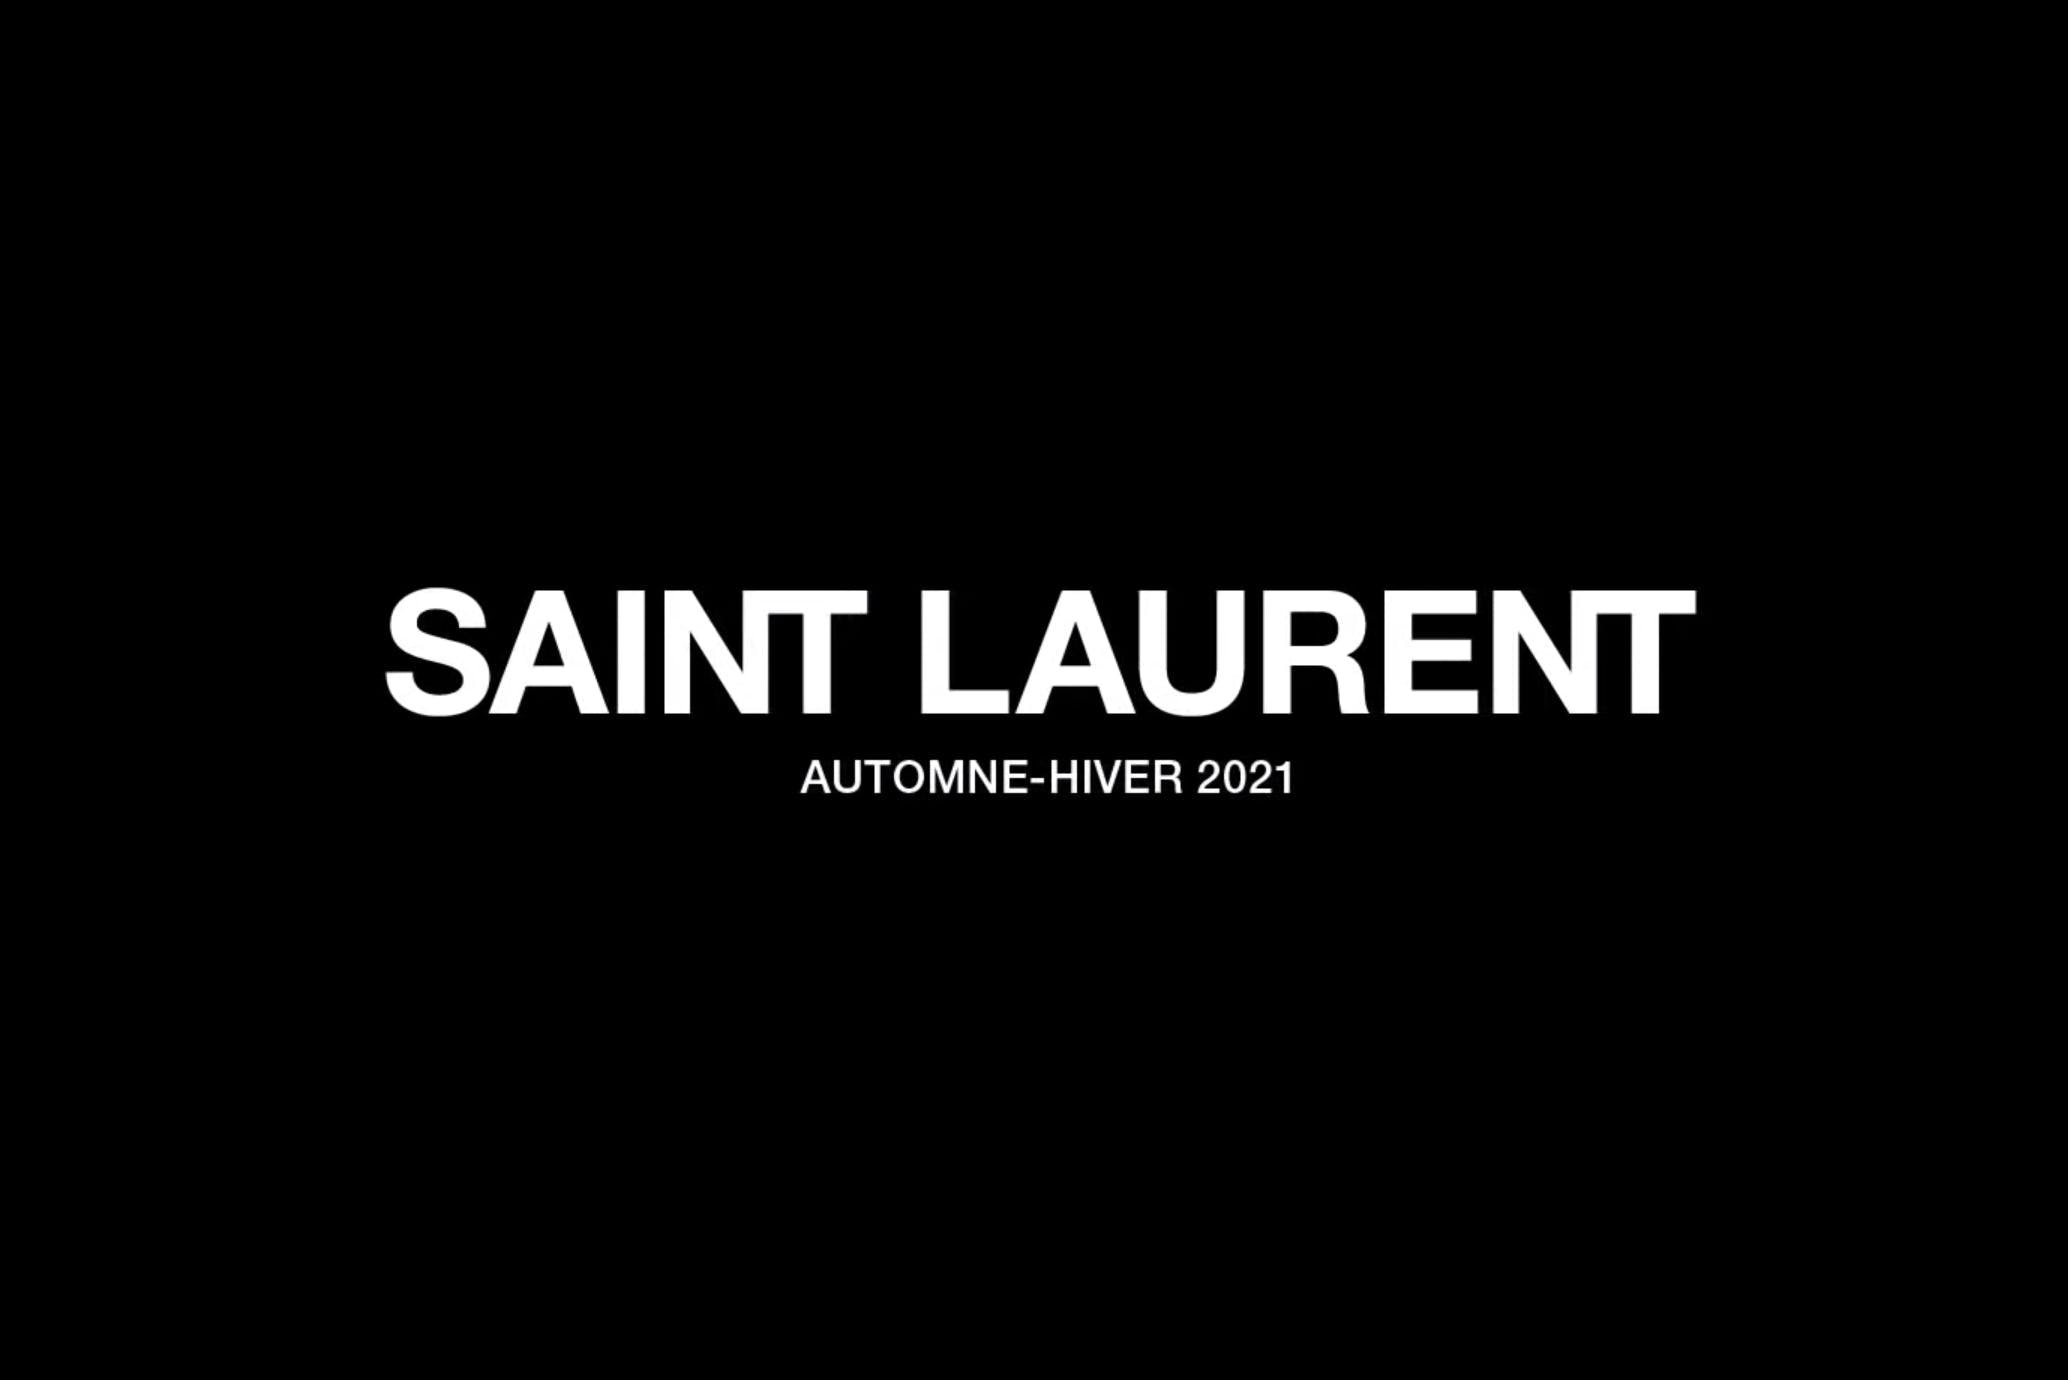 Сен лоран текст. Saint Laurent вывеска. Сен Лоран логотип. Saint Laurent знак. Saint Laurent надпись.